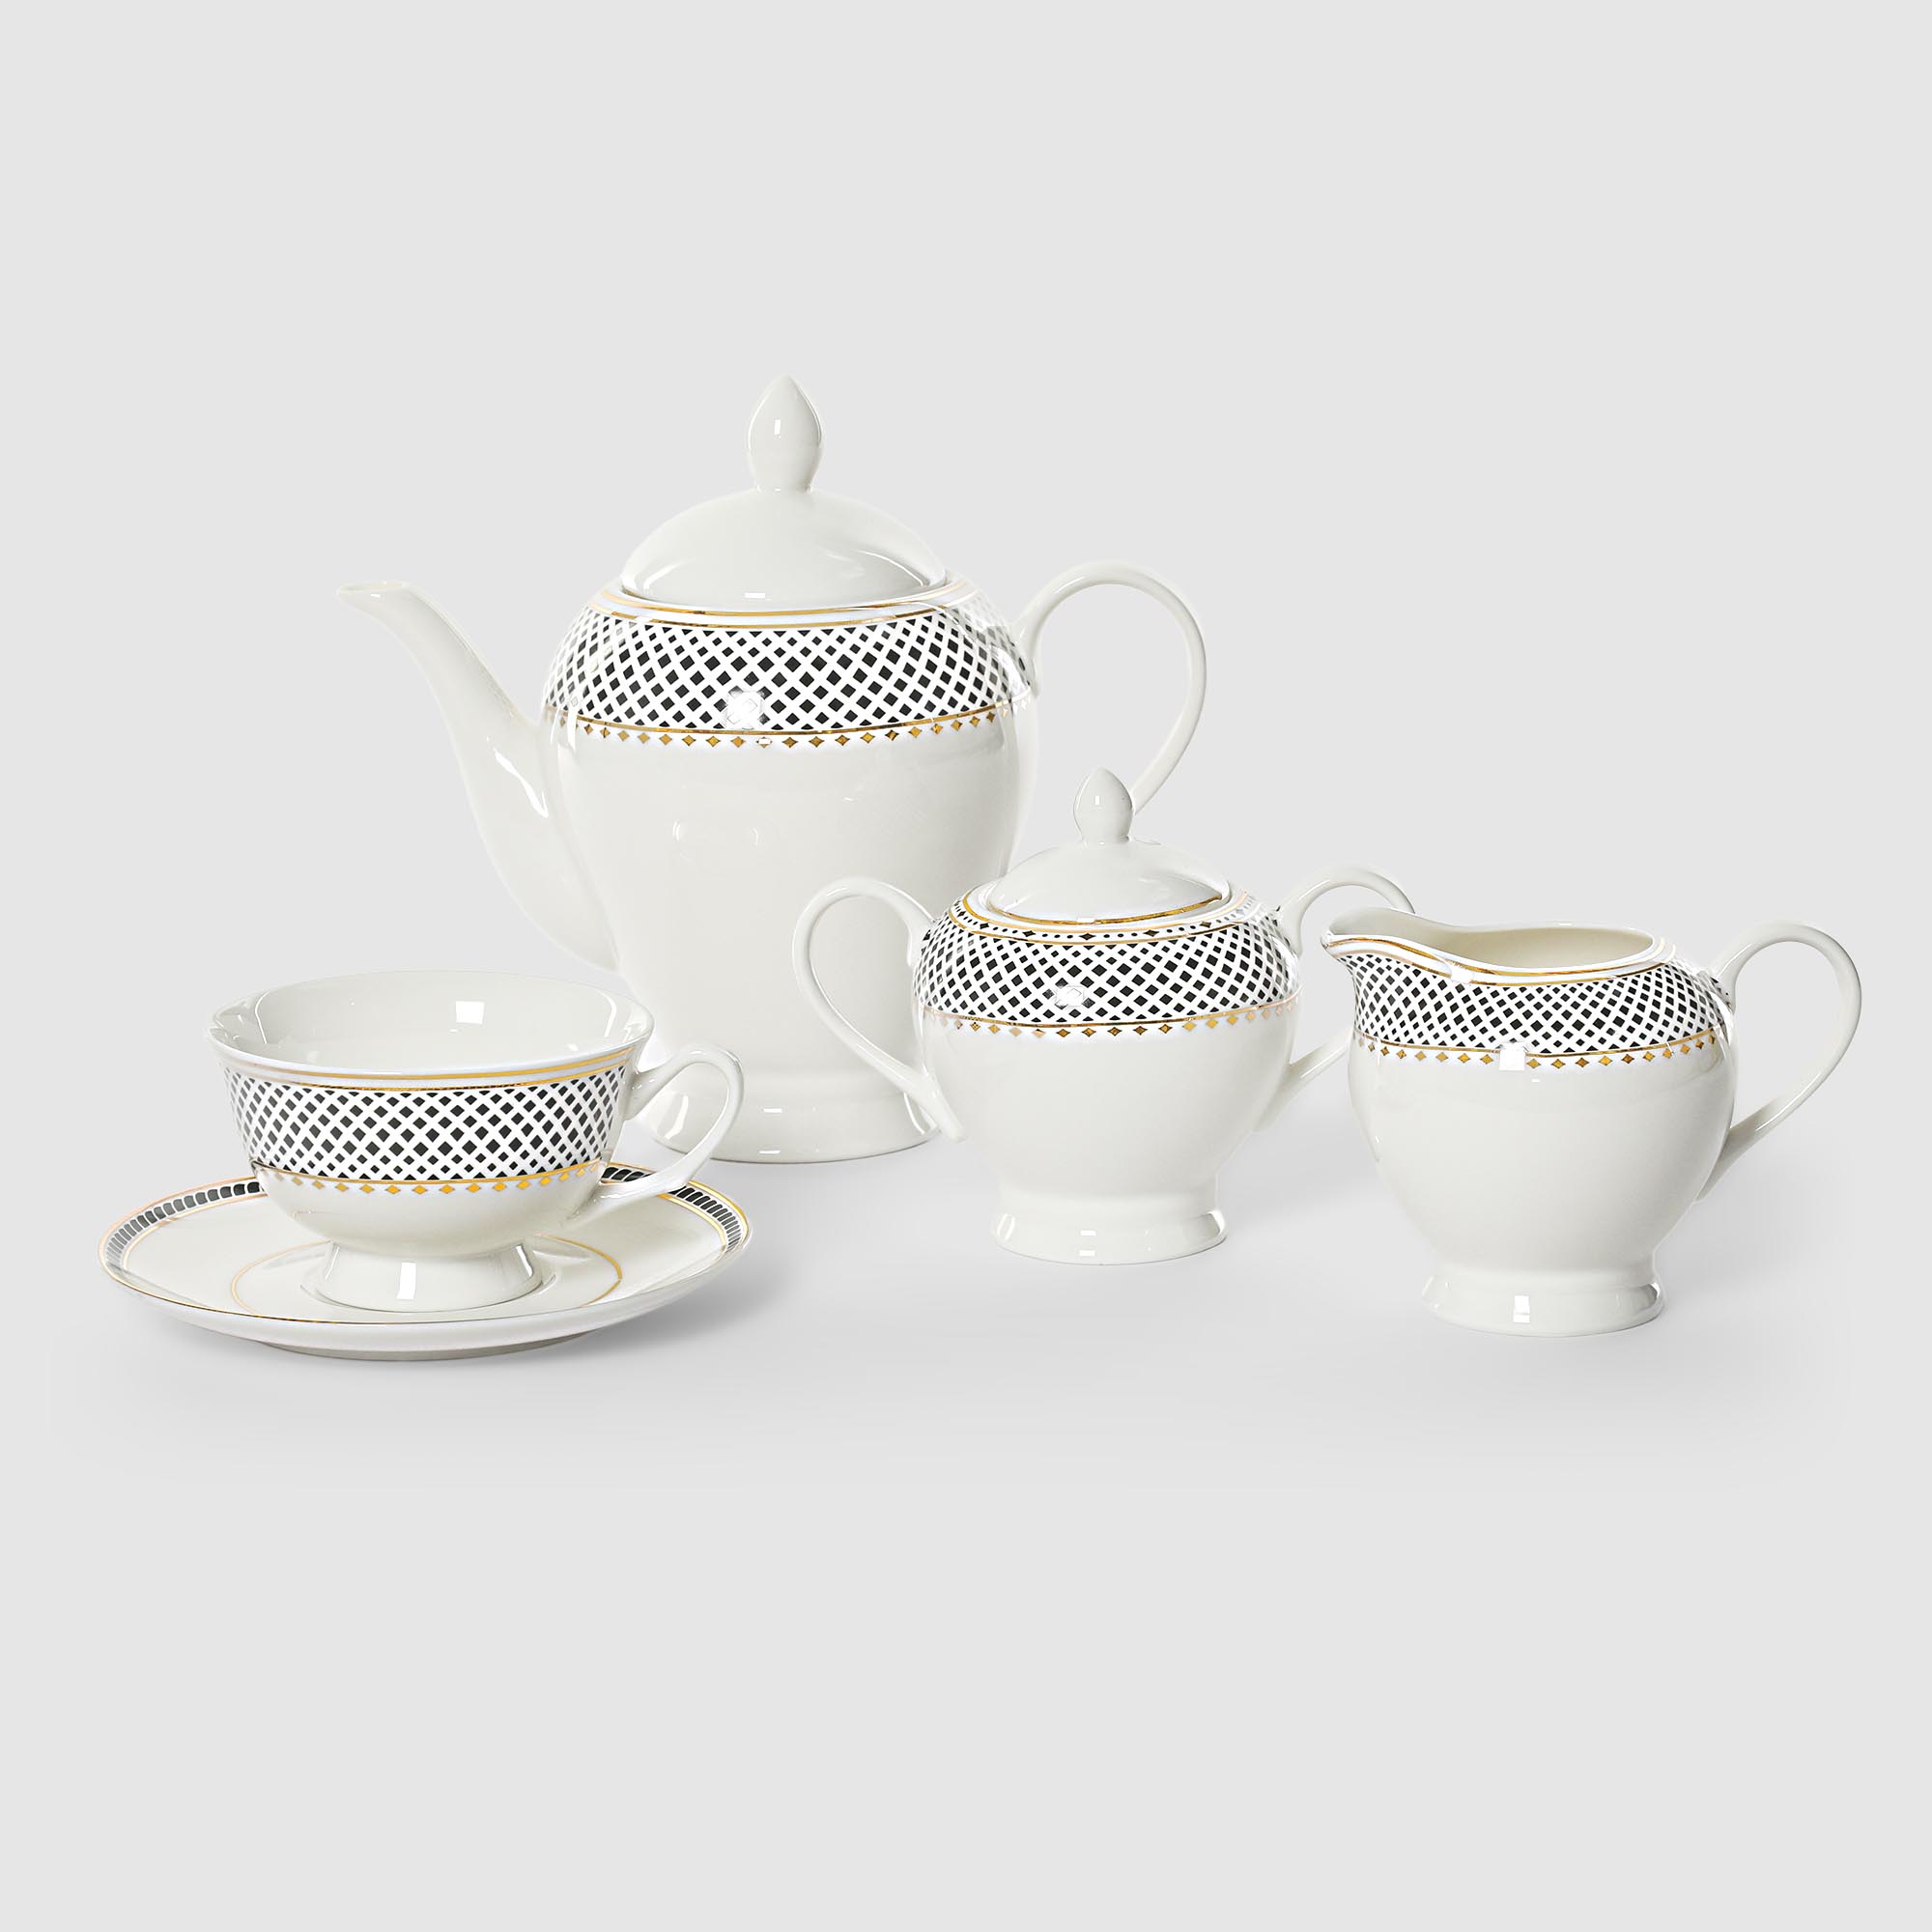 Сервиз чайный French garden Twist 15 предметов 6 персон, цвет белый